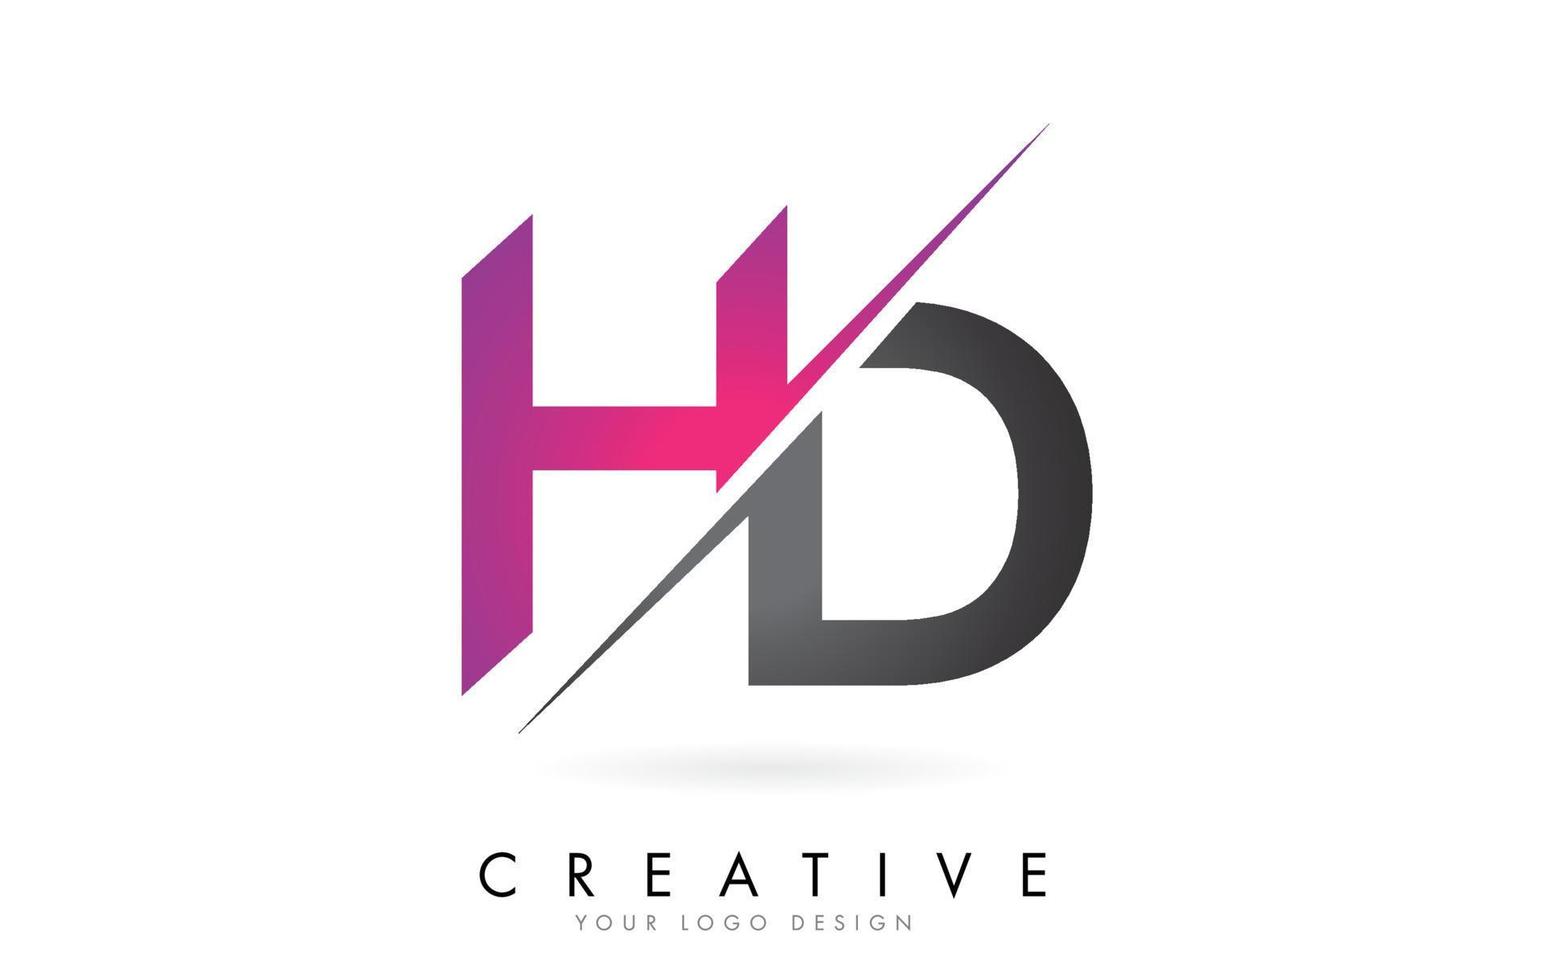 logo de letra hd hd con diseño de bloque de color y corte creativo. vector